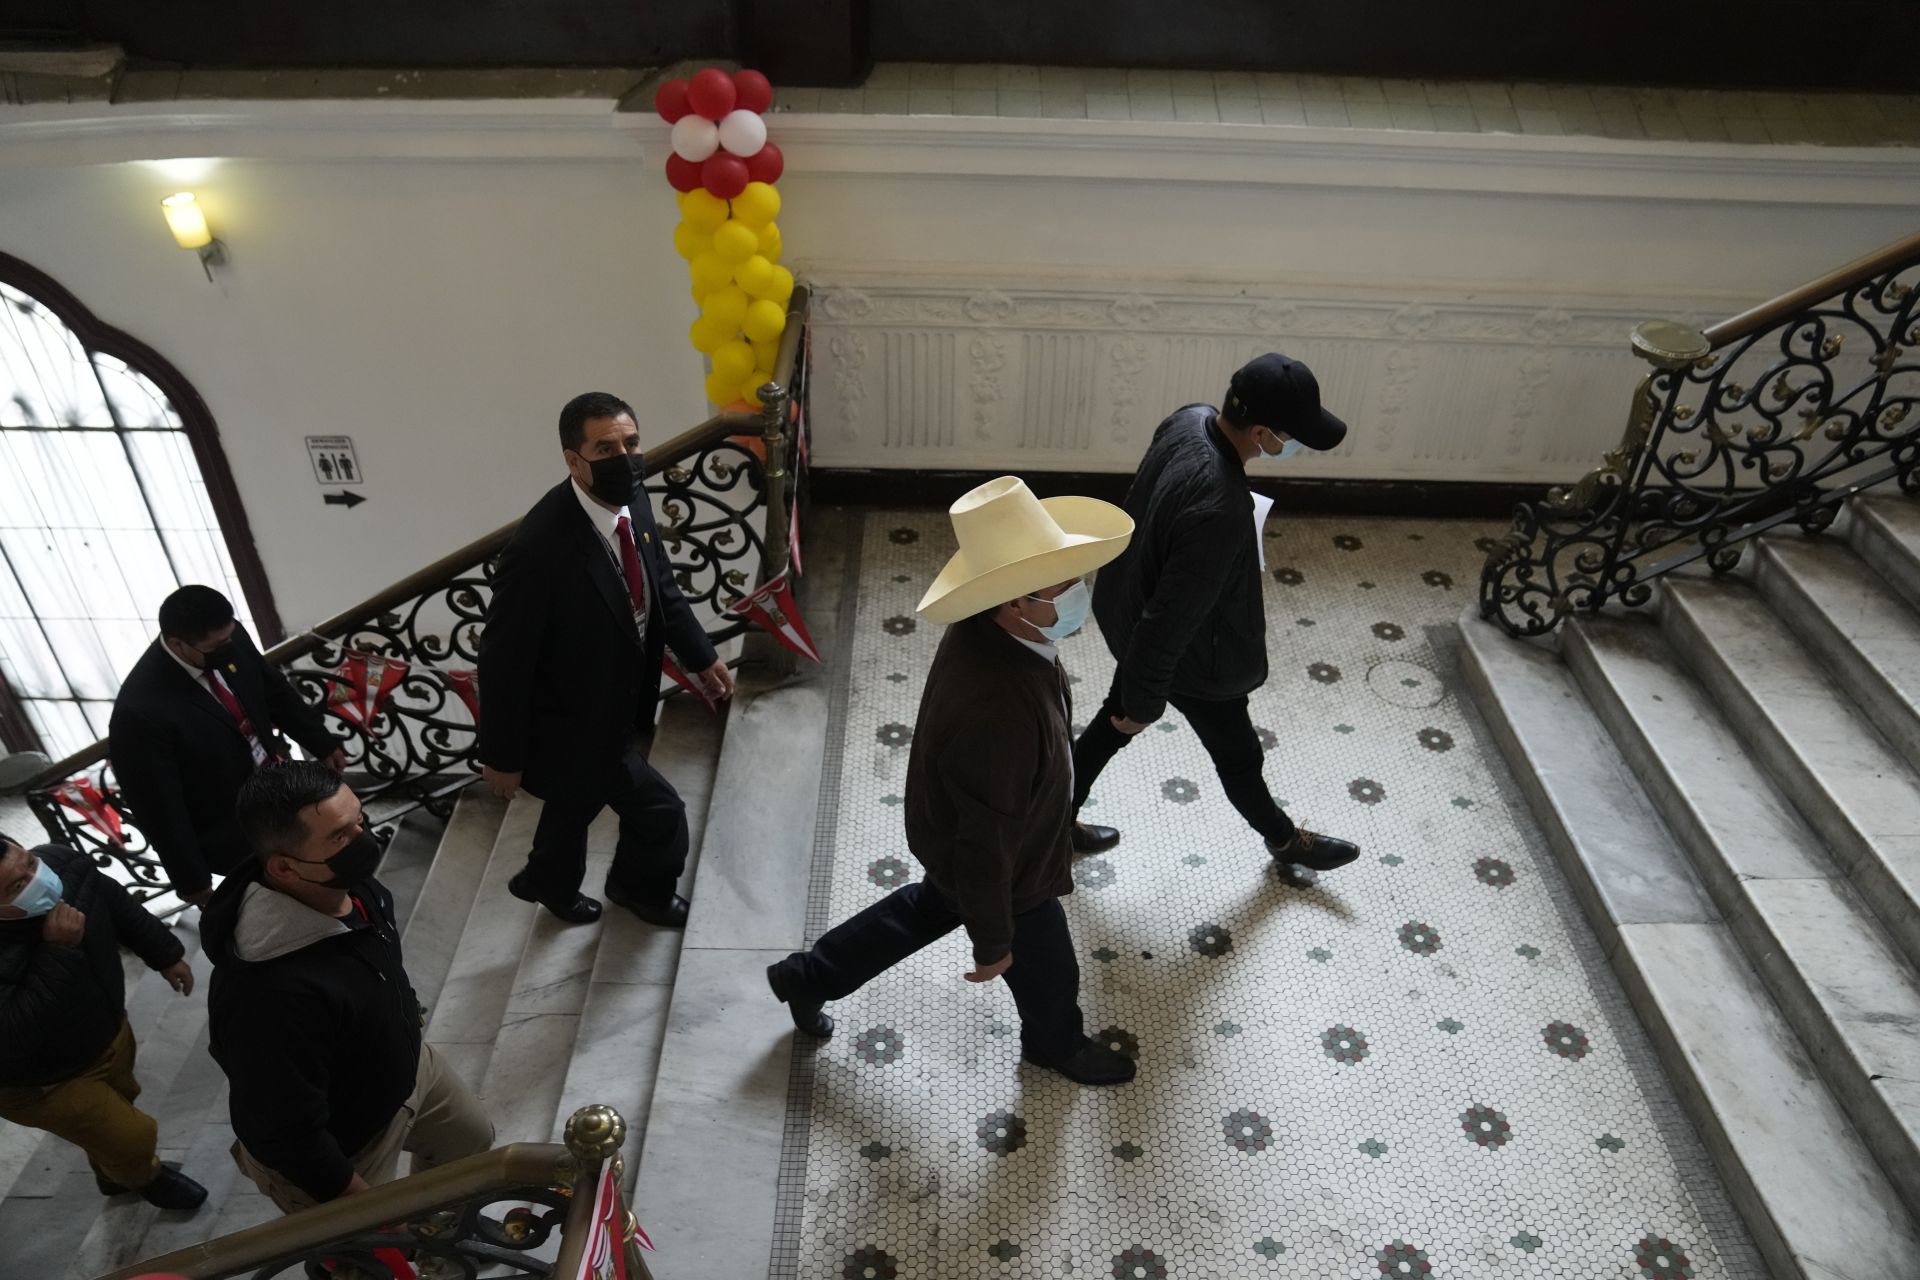  15 юни 2021 година - С обичайната шапка на глава претендентът за президент на Перу Педро Кастийо потегля към залата за конференция. Седмица след президентските избори управляващите продължаваха да ревизират изказванията на Кейко Фухимори за машинация в интерес на Кастийо. 